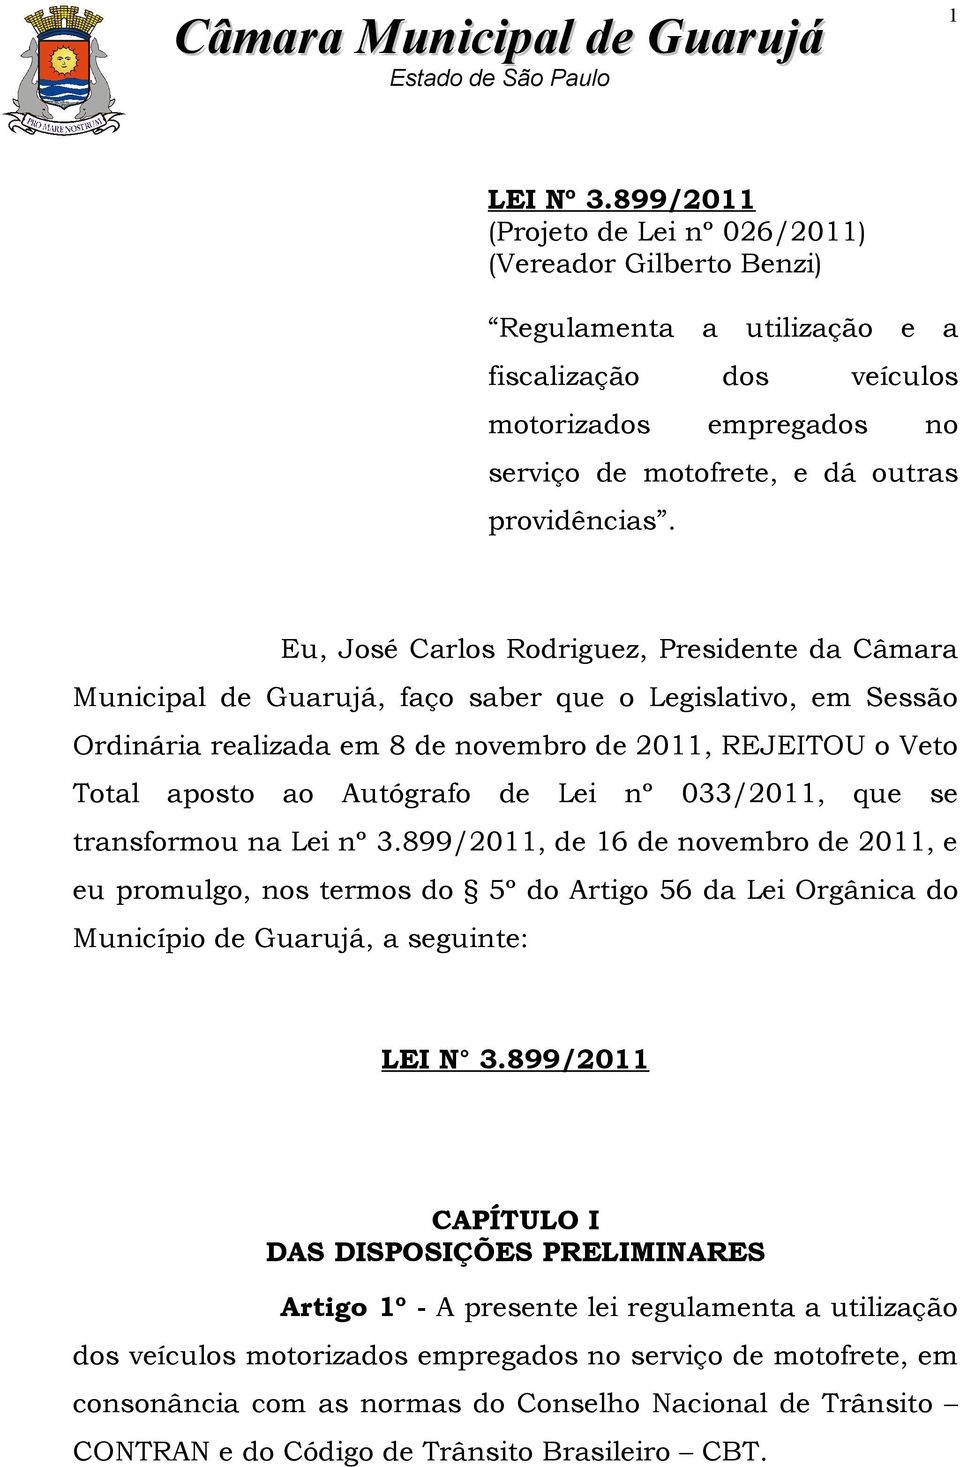 Eu, José Carlos Rodriguez, Presidente da Câmara Municipal de Guarujá, faço saber que o Legislativo, em Sessão Ordinária realizada em 8 de novembro de 2011, REJEITOU o Veto Total aposto ao Autógrafo